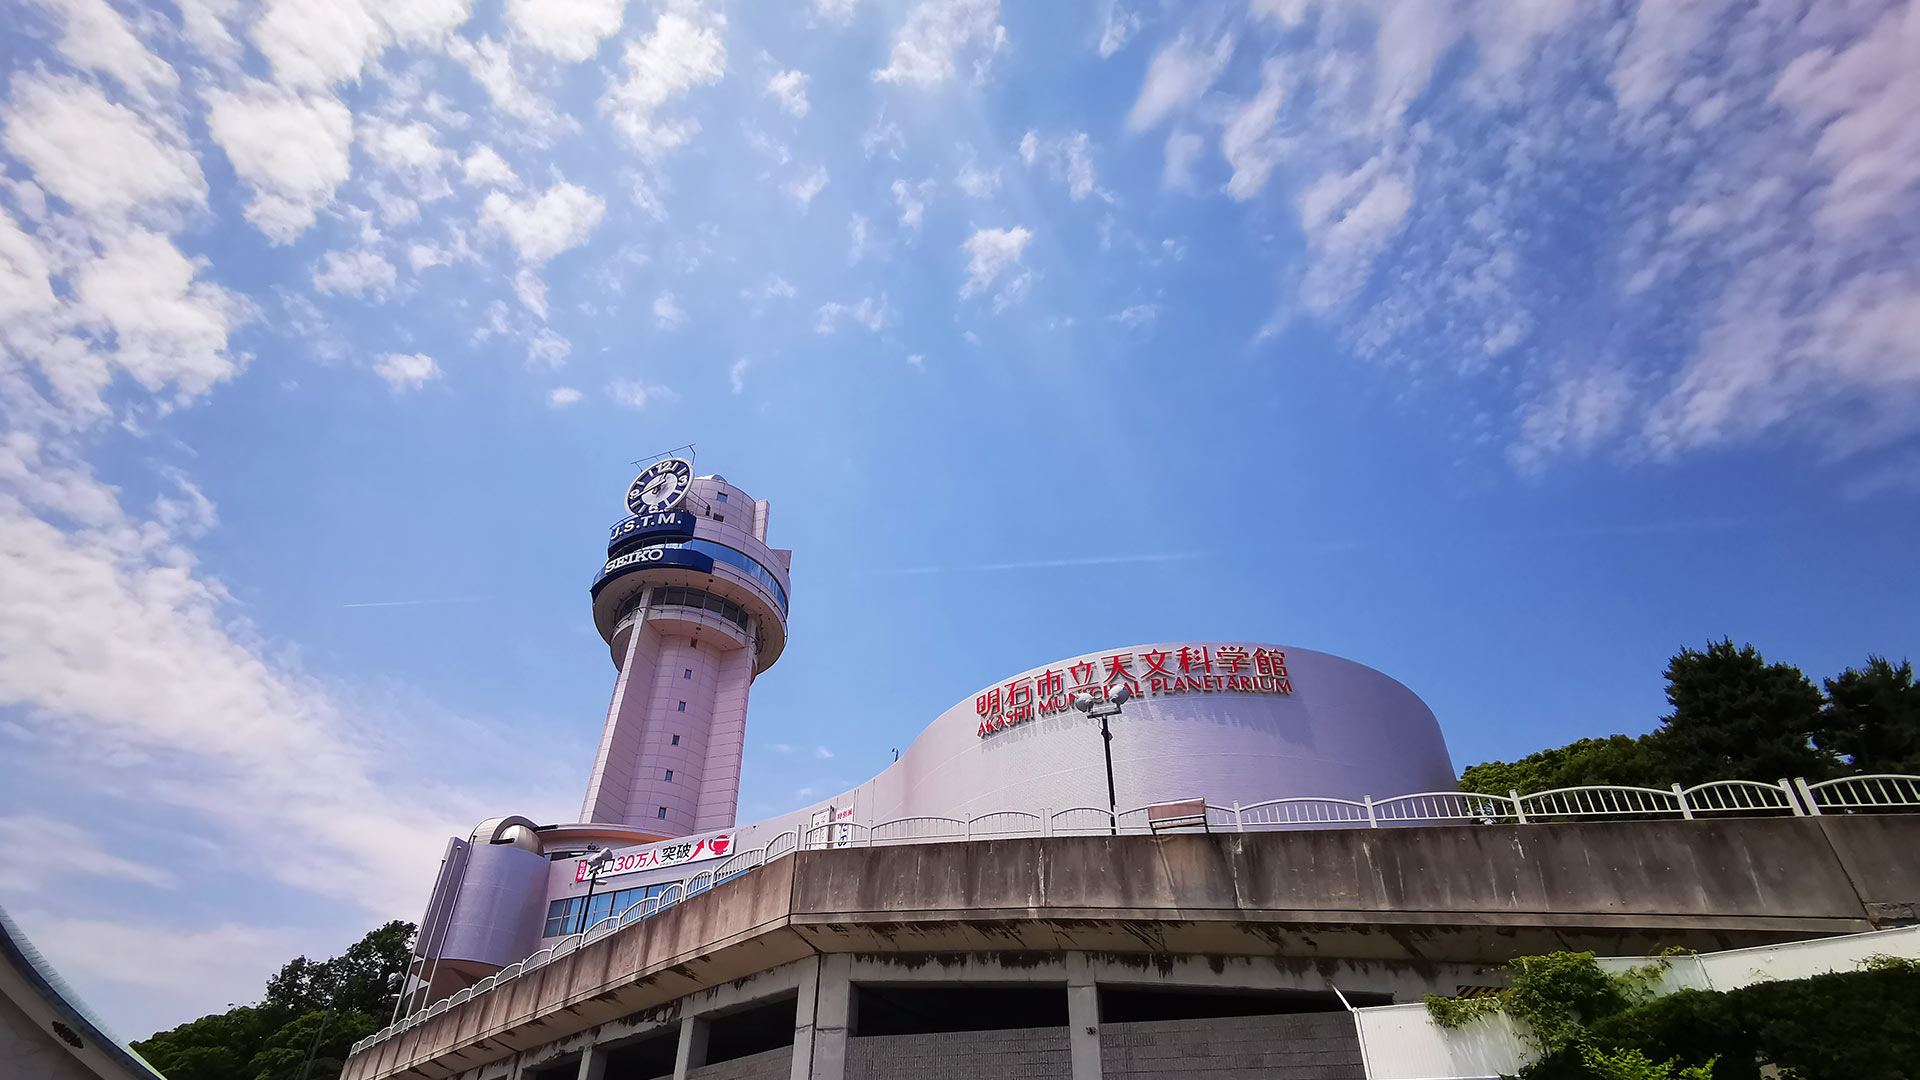 明石市立天文科学館（あかしてんもんかがくかん）Akashi Municipal Planetarium